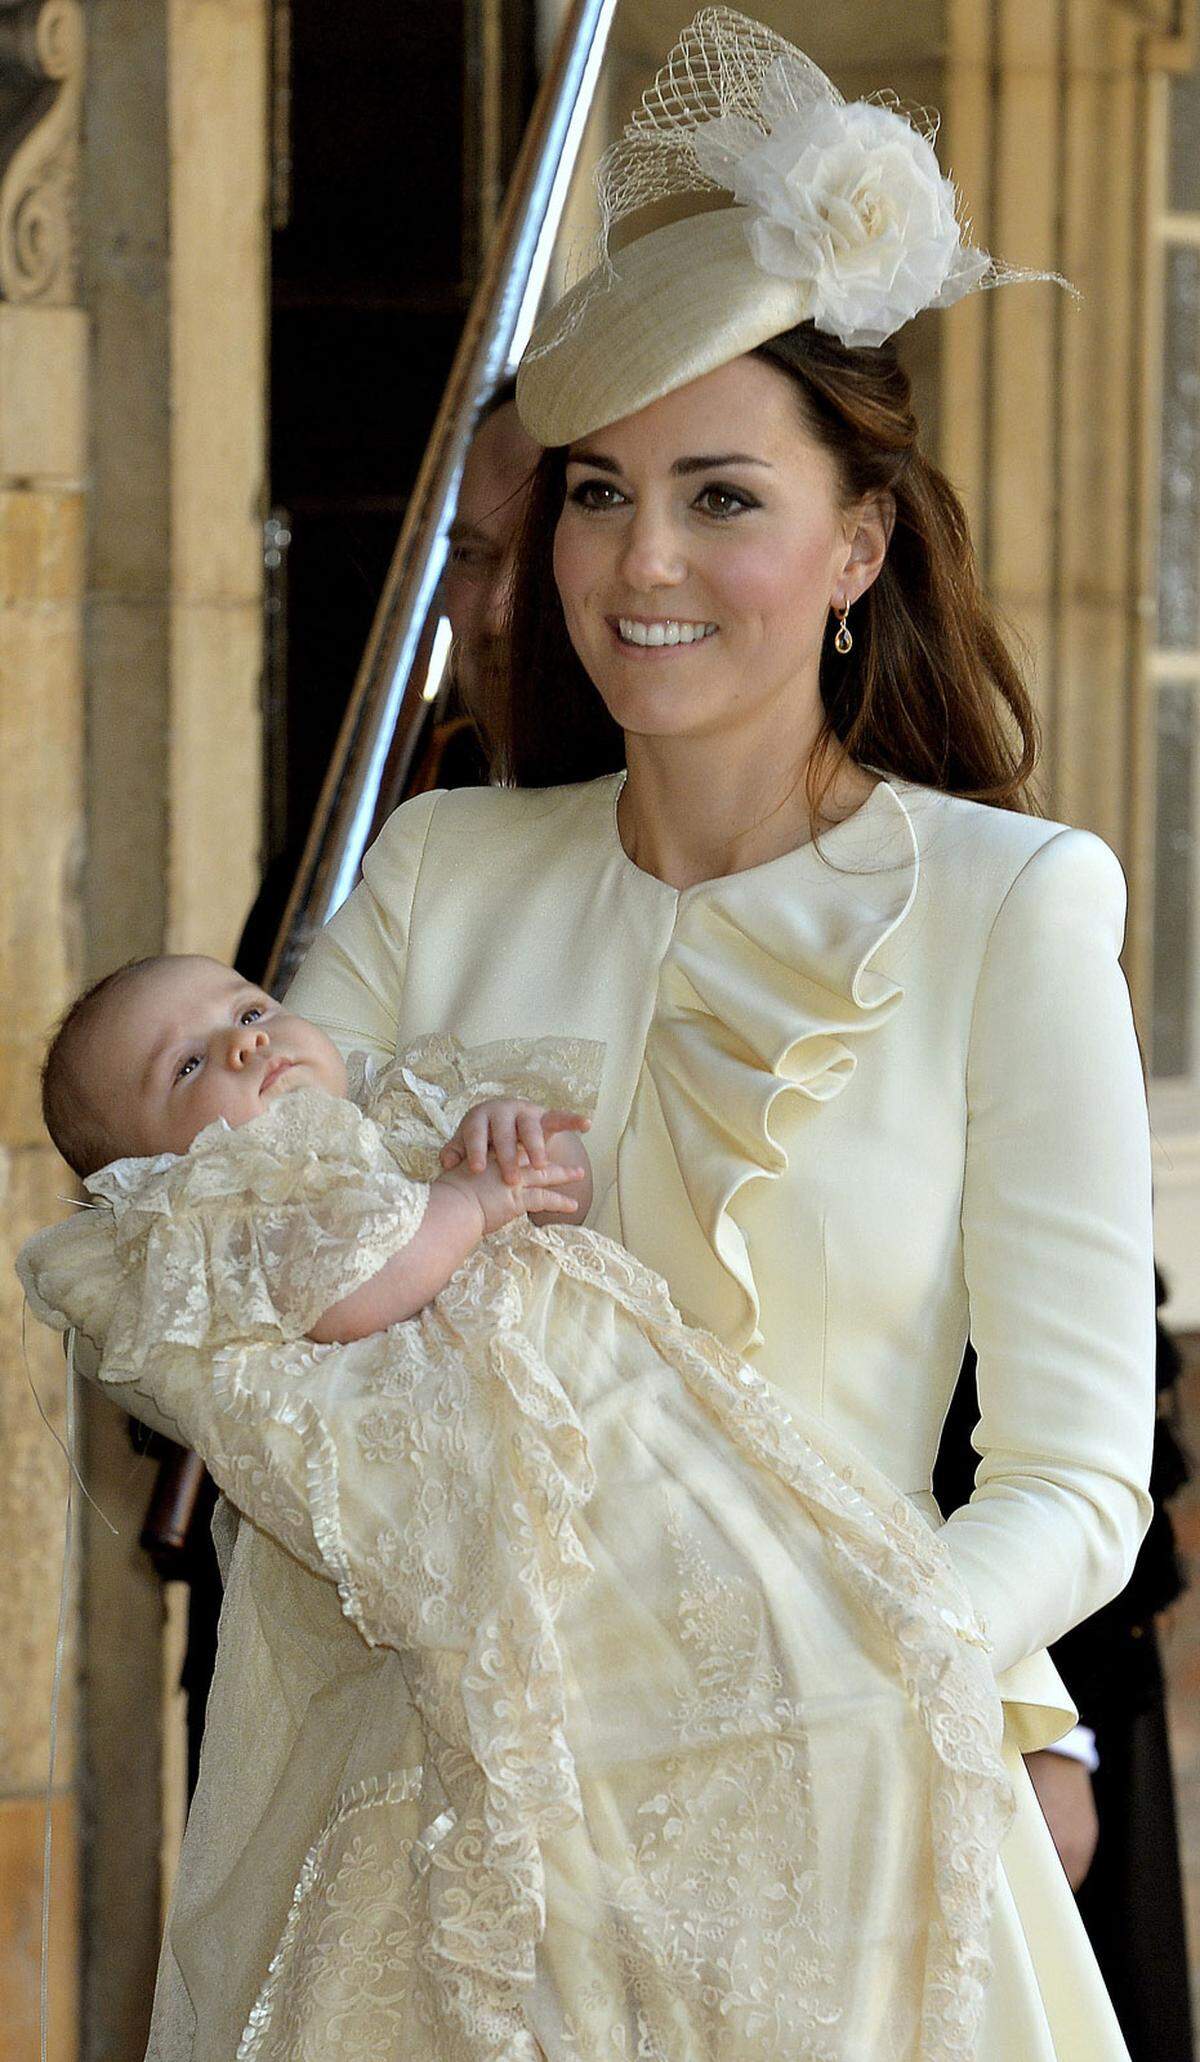 Prinz George Alexander Louis hatte seinen ersten großen Auftritt im Oktober 2013. Er sei während der Zeremonie ein "guter Junge" und sehr brav gewesen, verriet seine Mutter Kate damals.